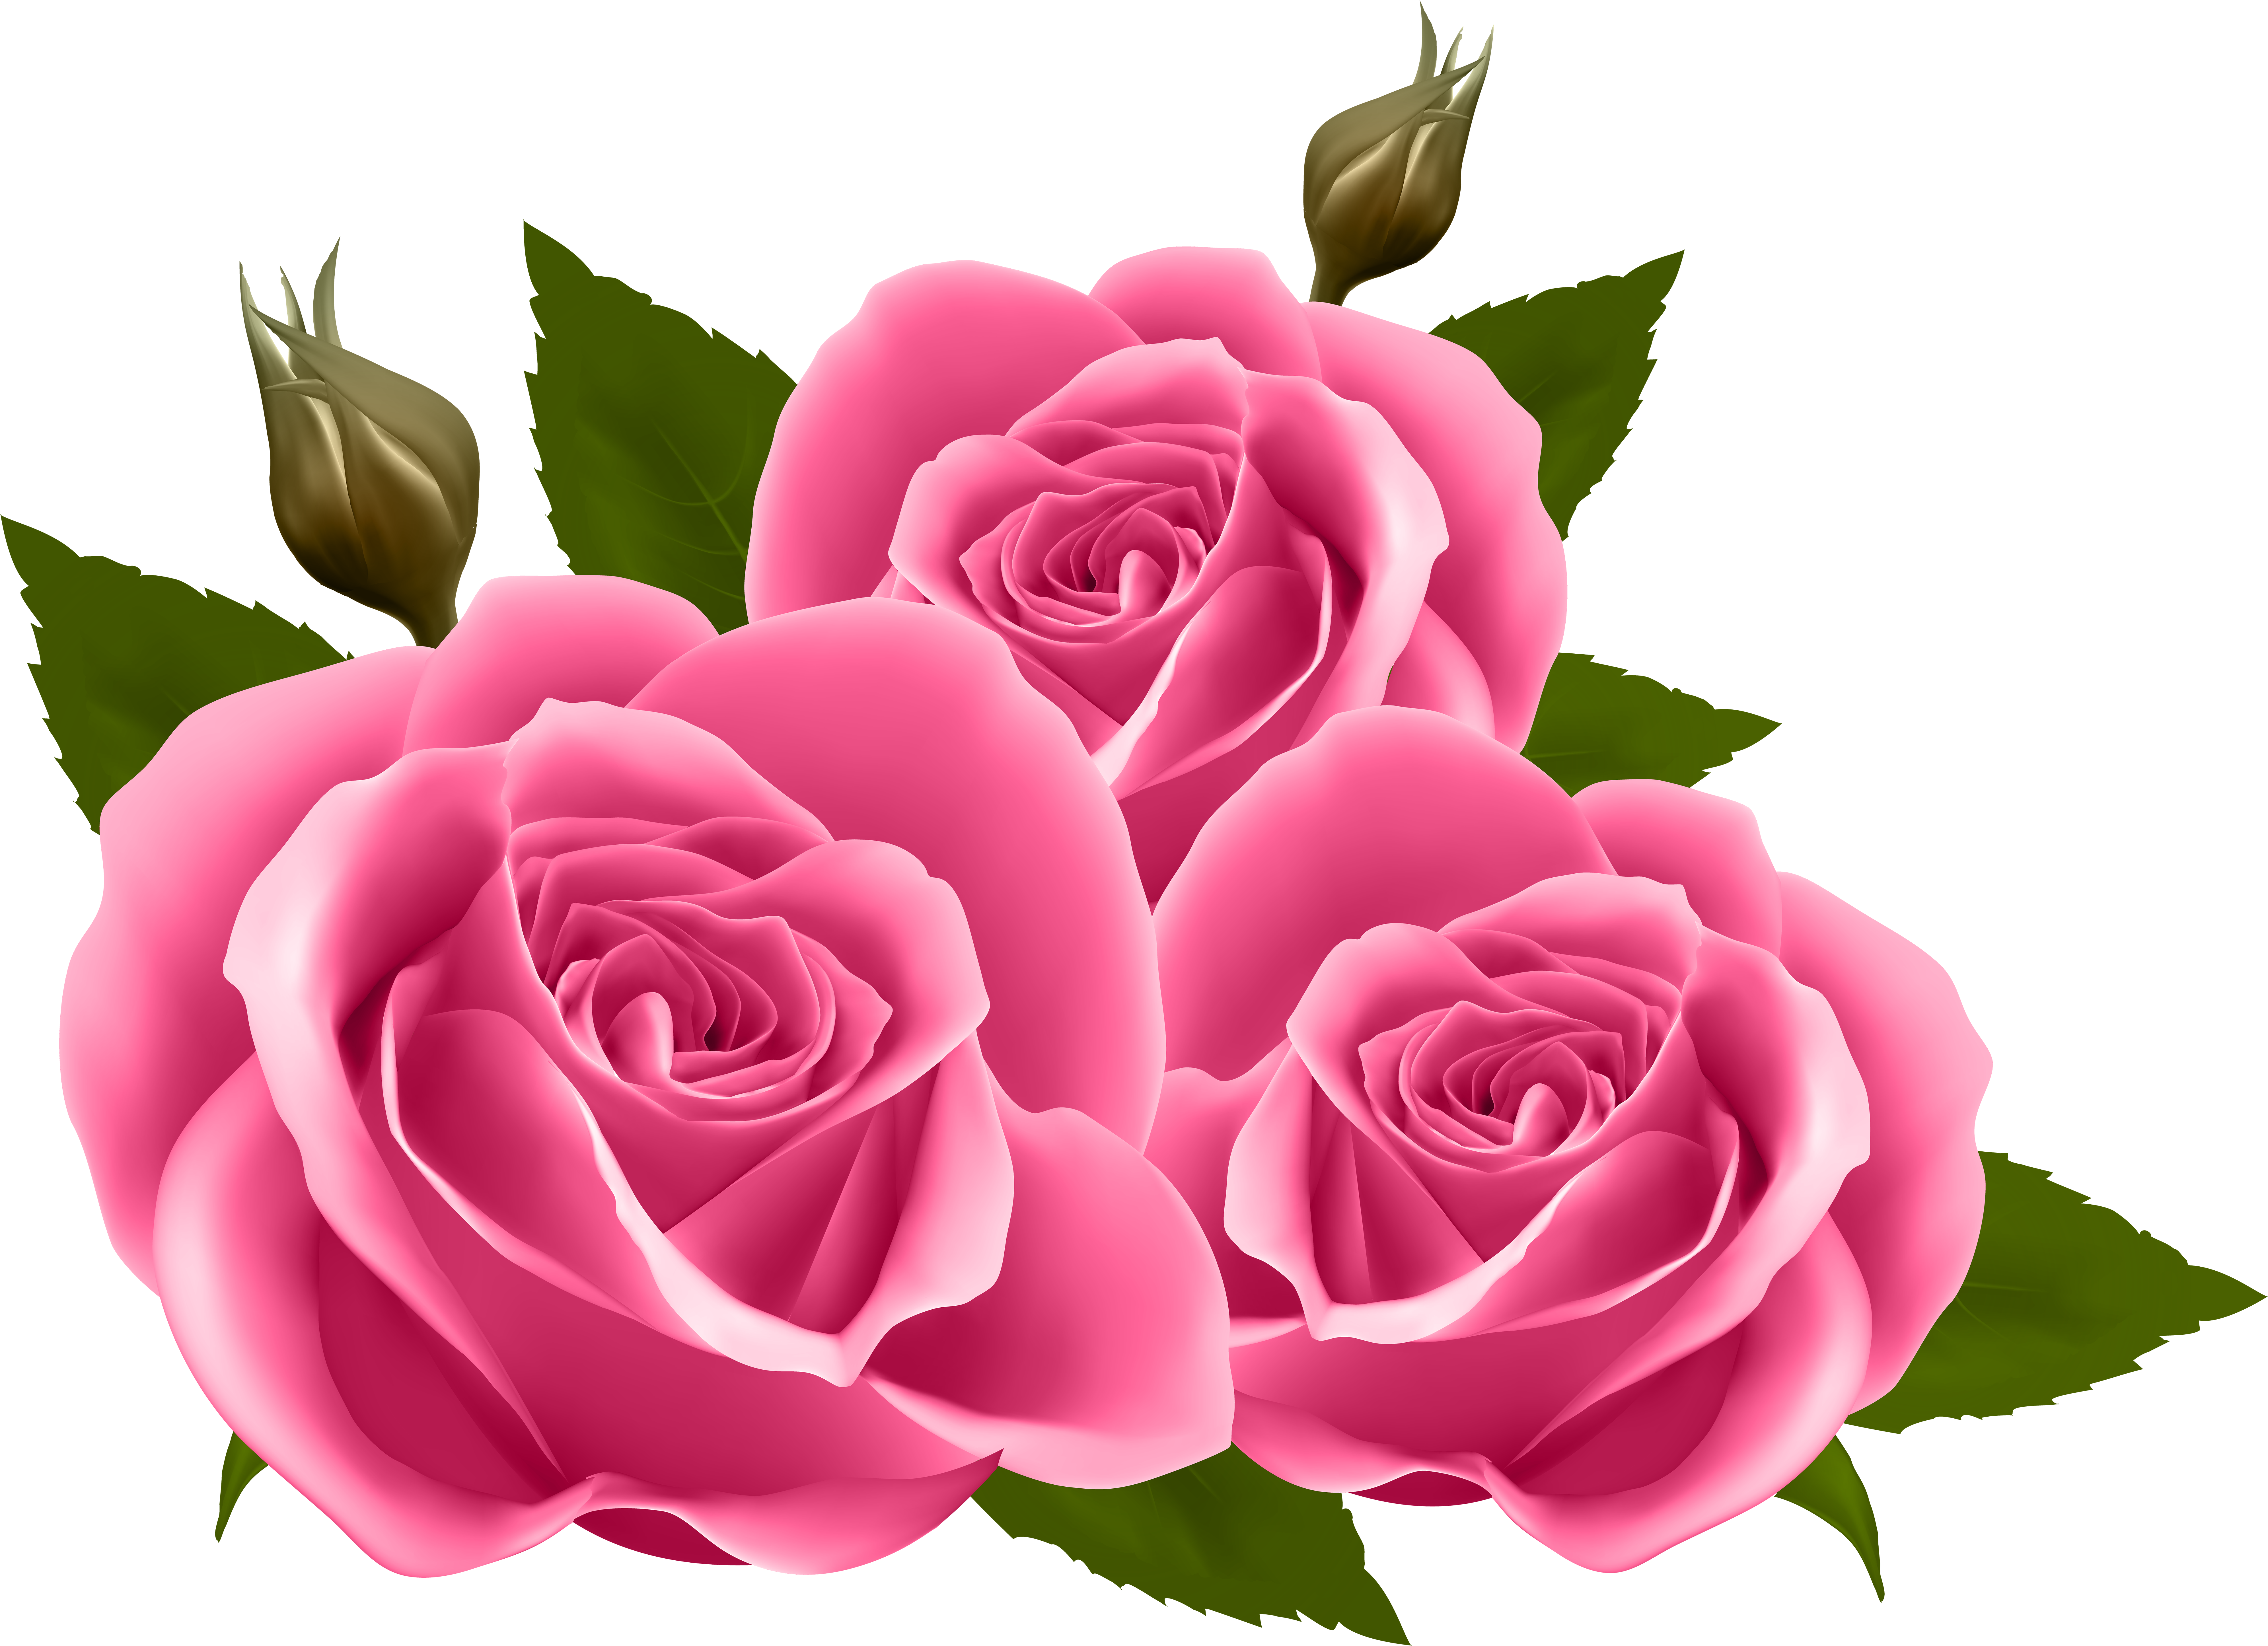 clipart roses garden rose